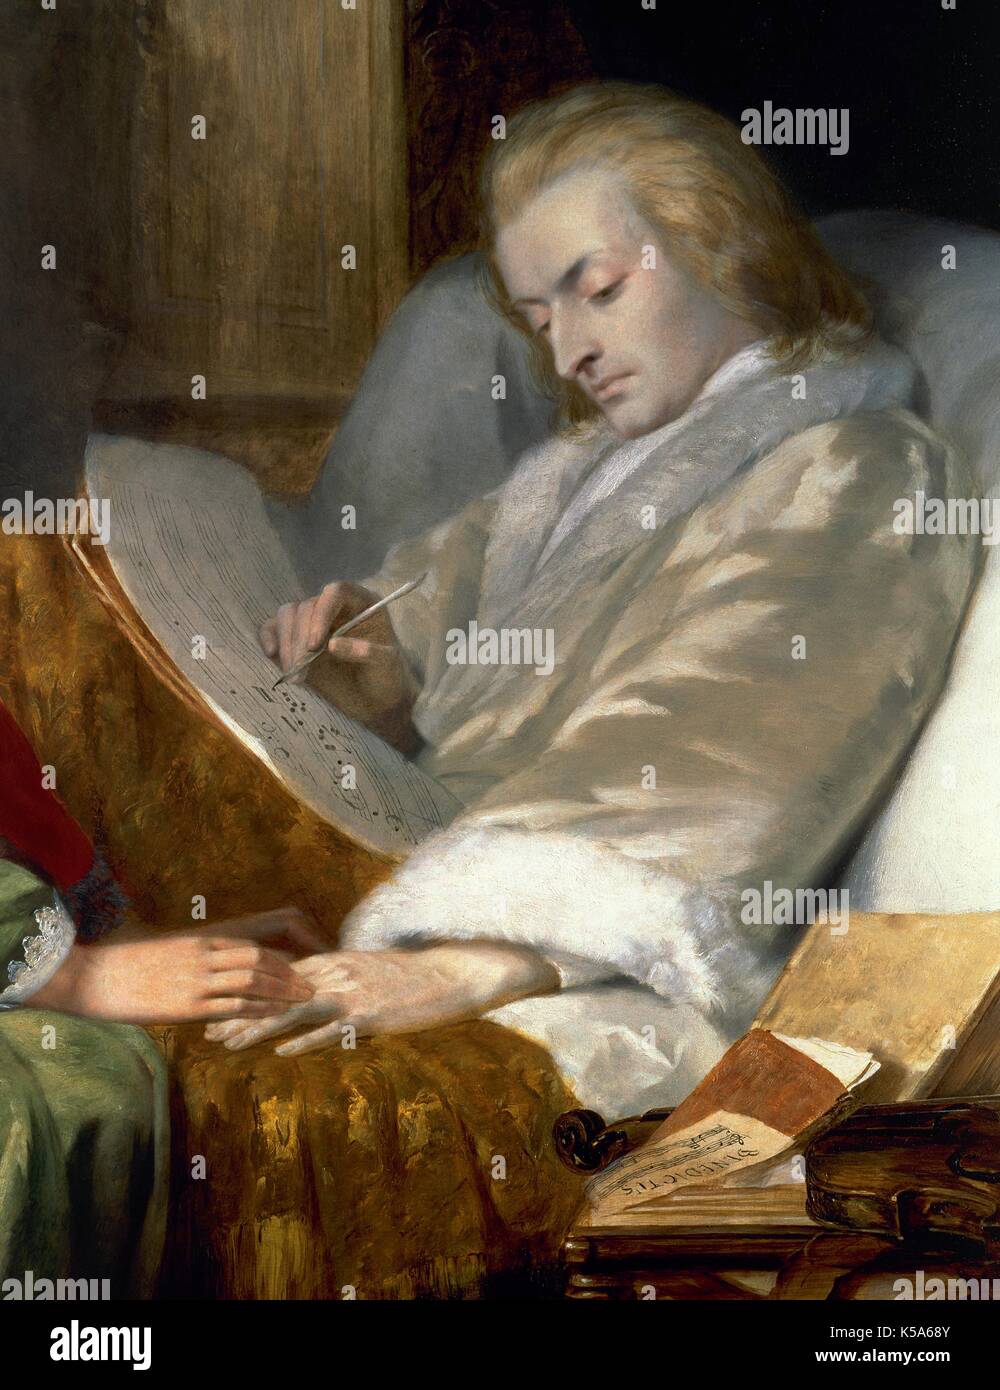 Wolfgang Amadeus Mozart (1756-1791). Il compositore austriaco. Mozart compone il Requiem. Dipinto di William James Grant (1854). Dettaglio. Foto Stock